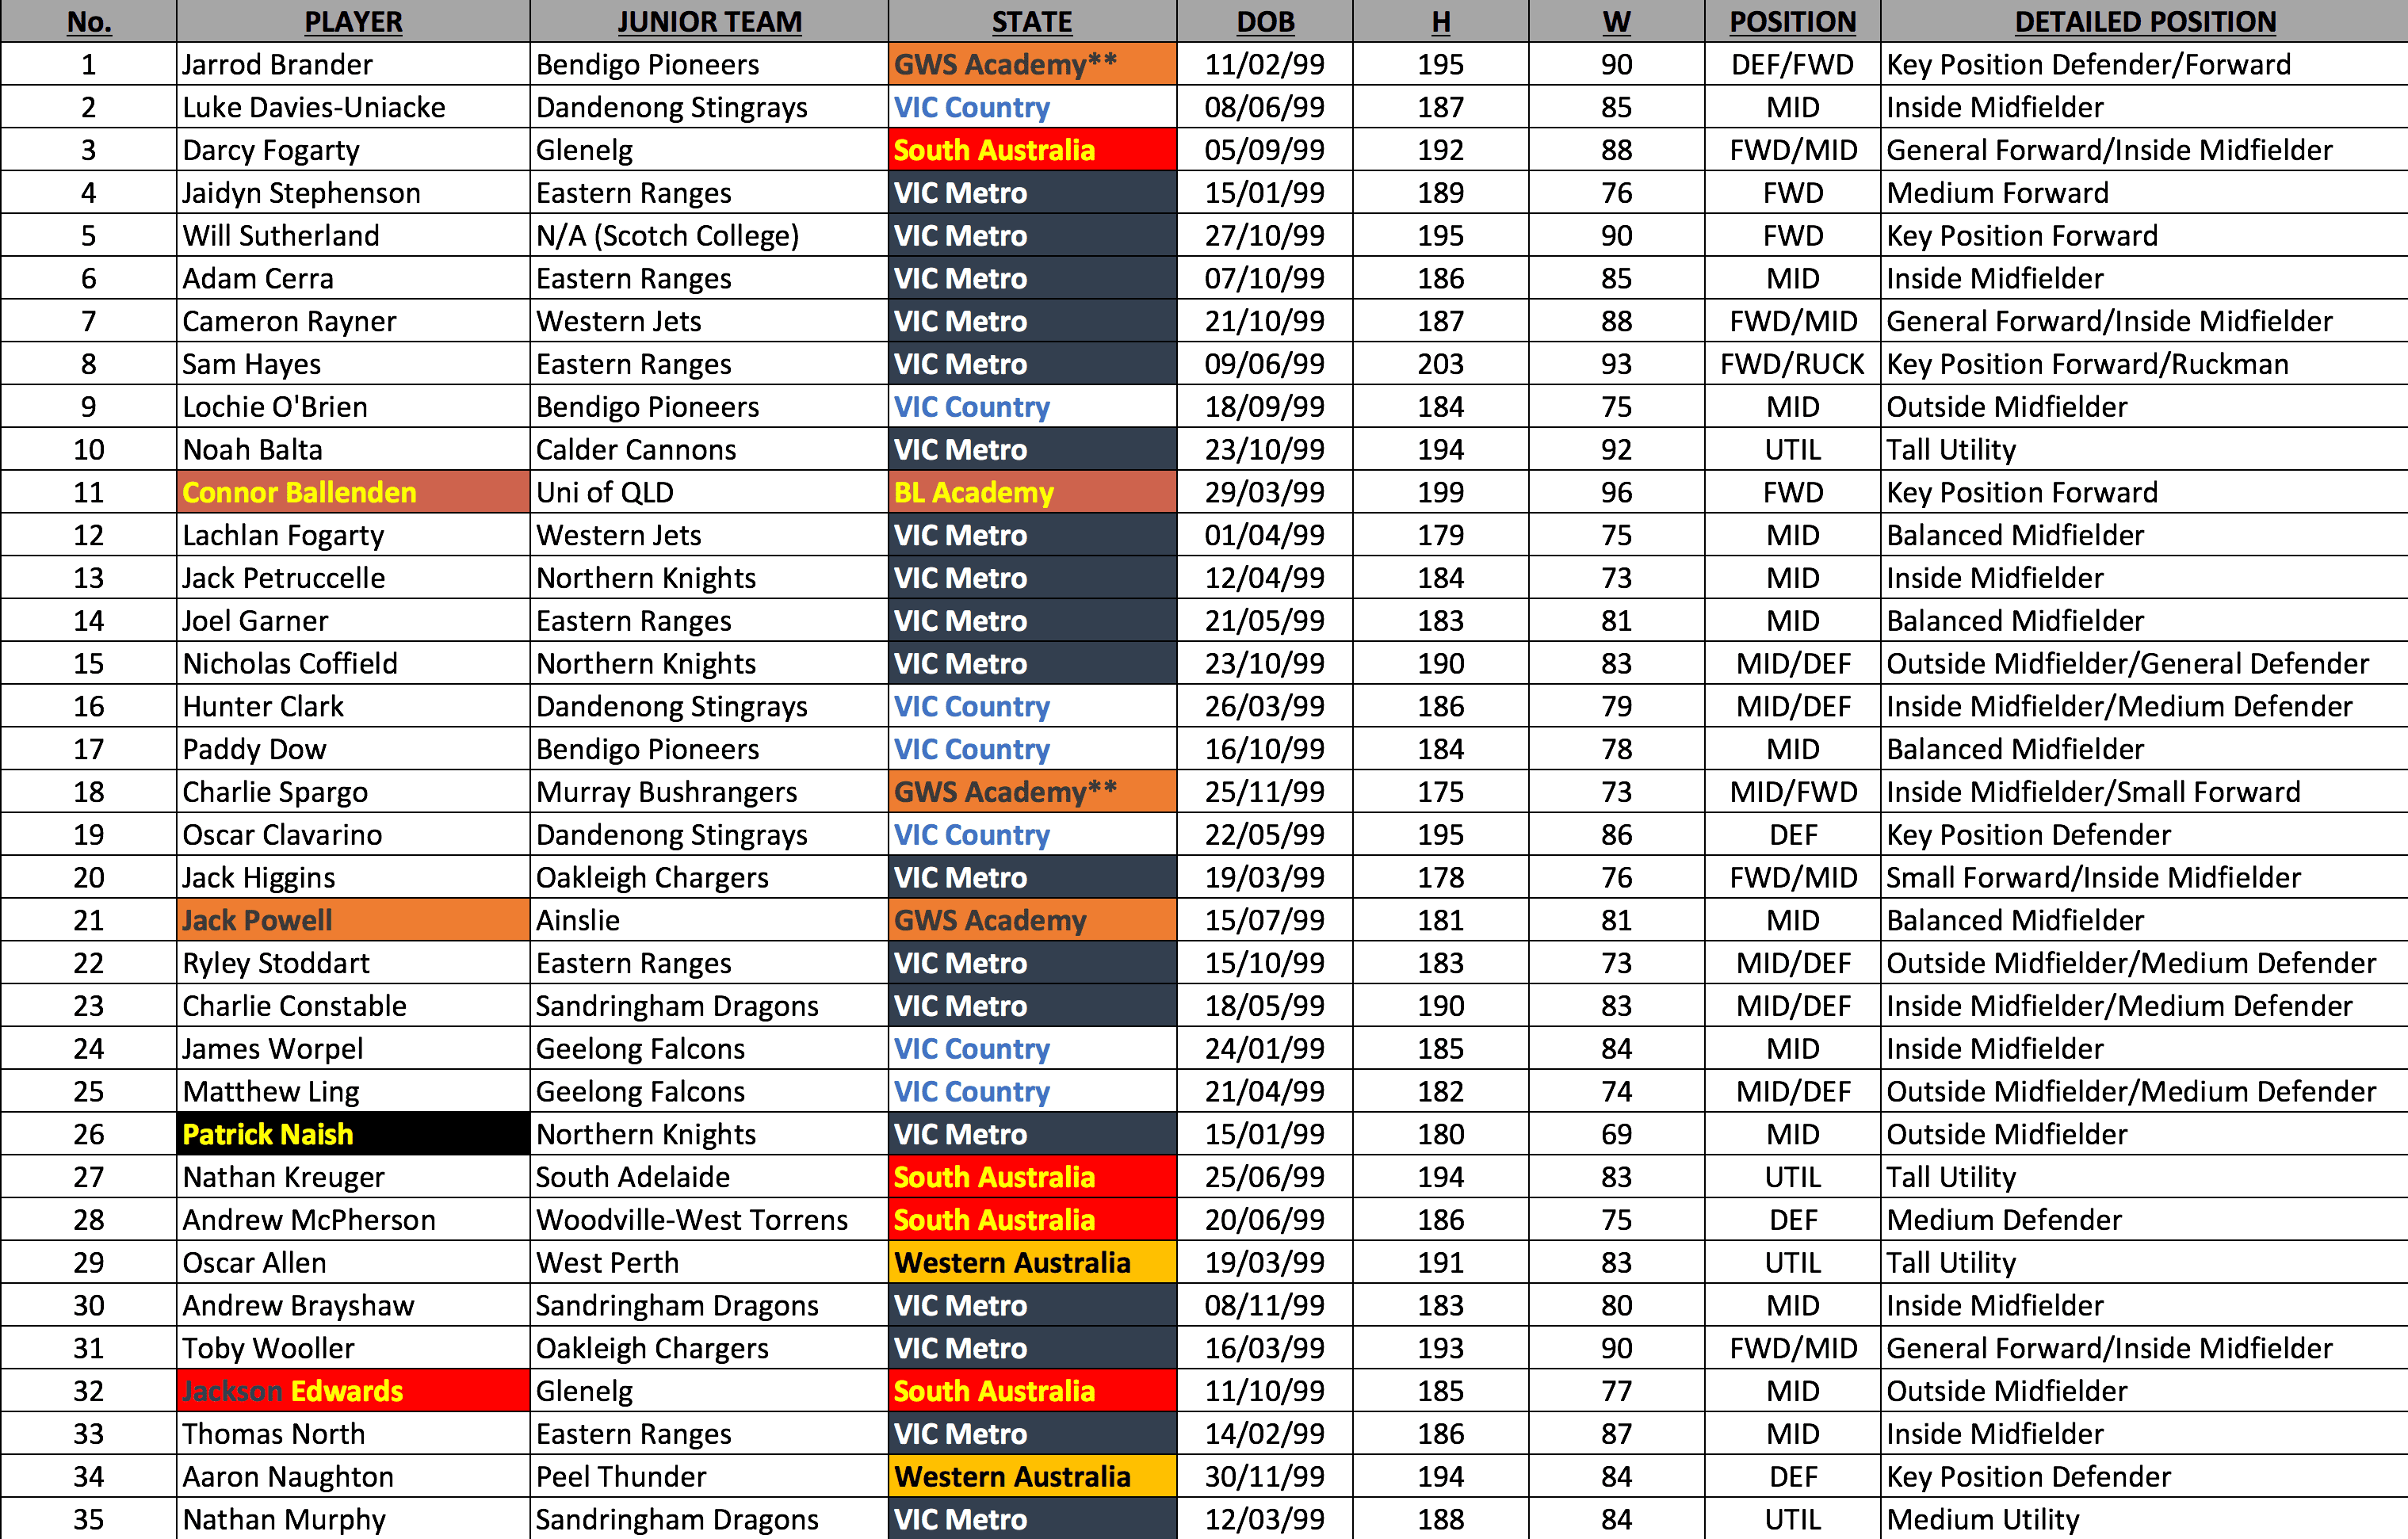 Bishop's 2017 June Draft Rankings